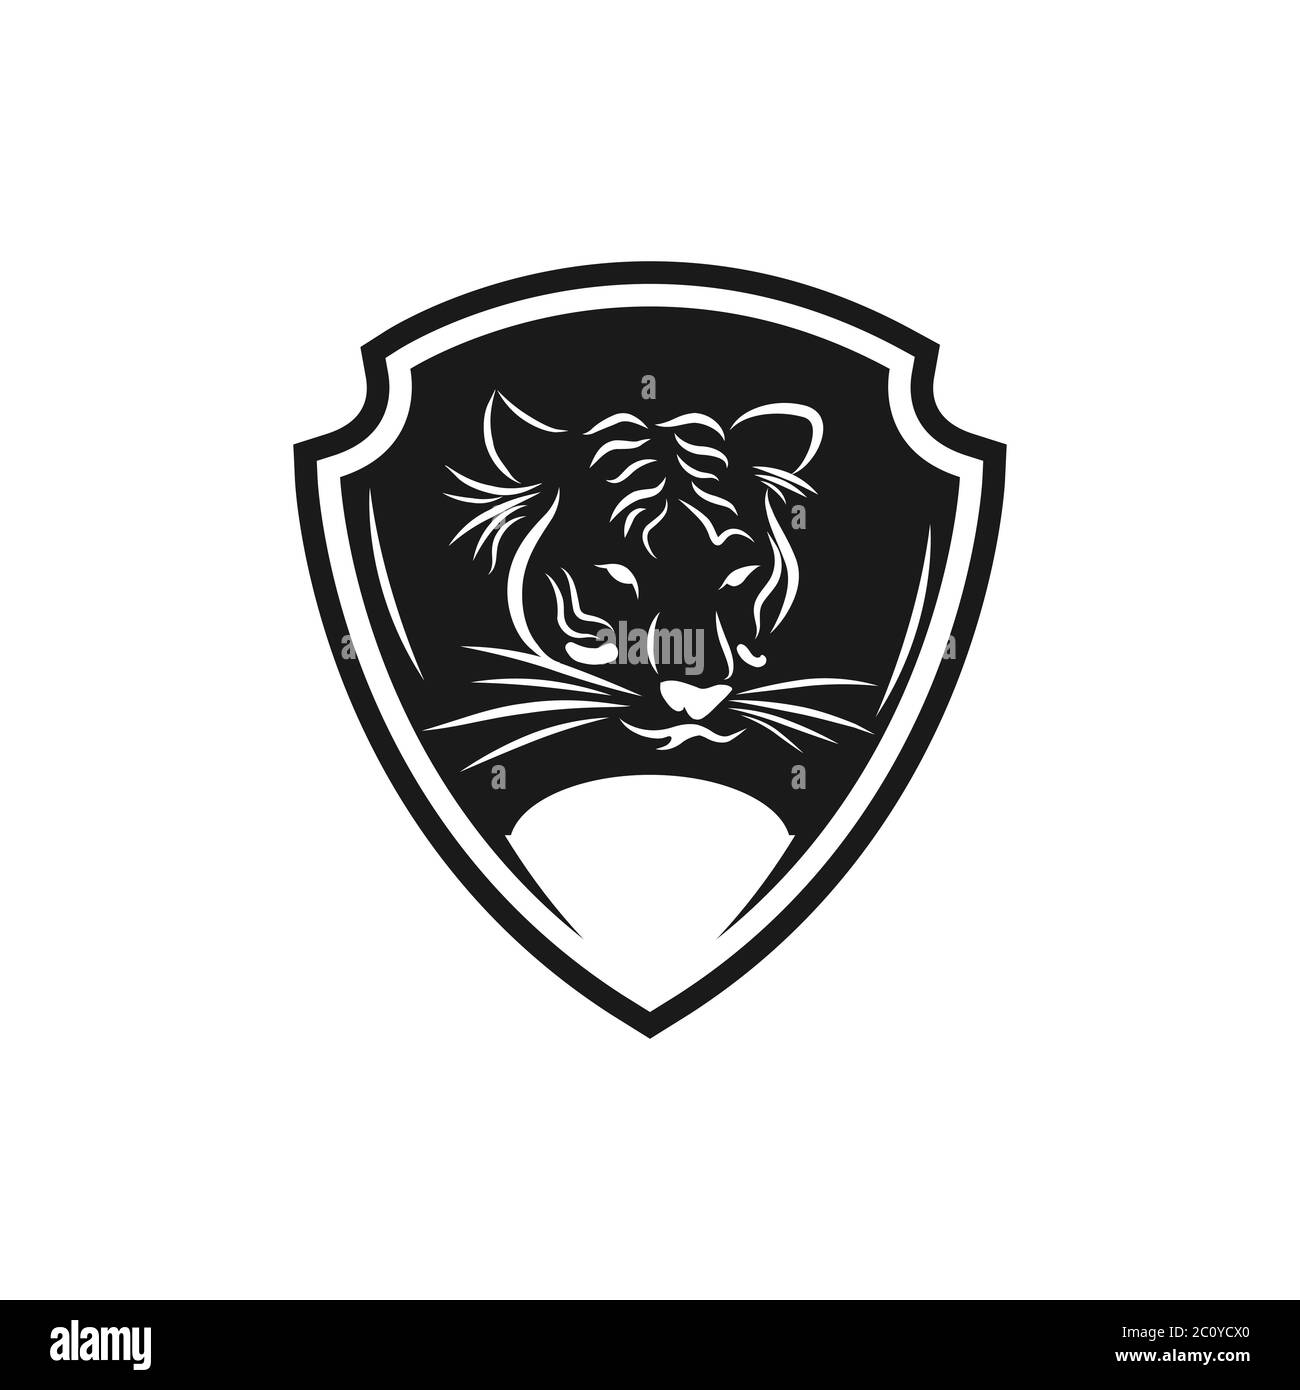 Tiger face logo emblem template mascot symbol for business or shirt design. Vector Vintage Design Element.EPS 10 Stock Vector